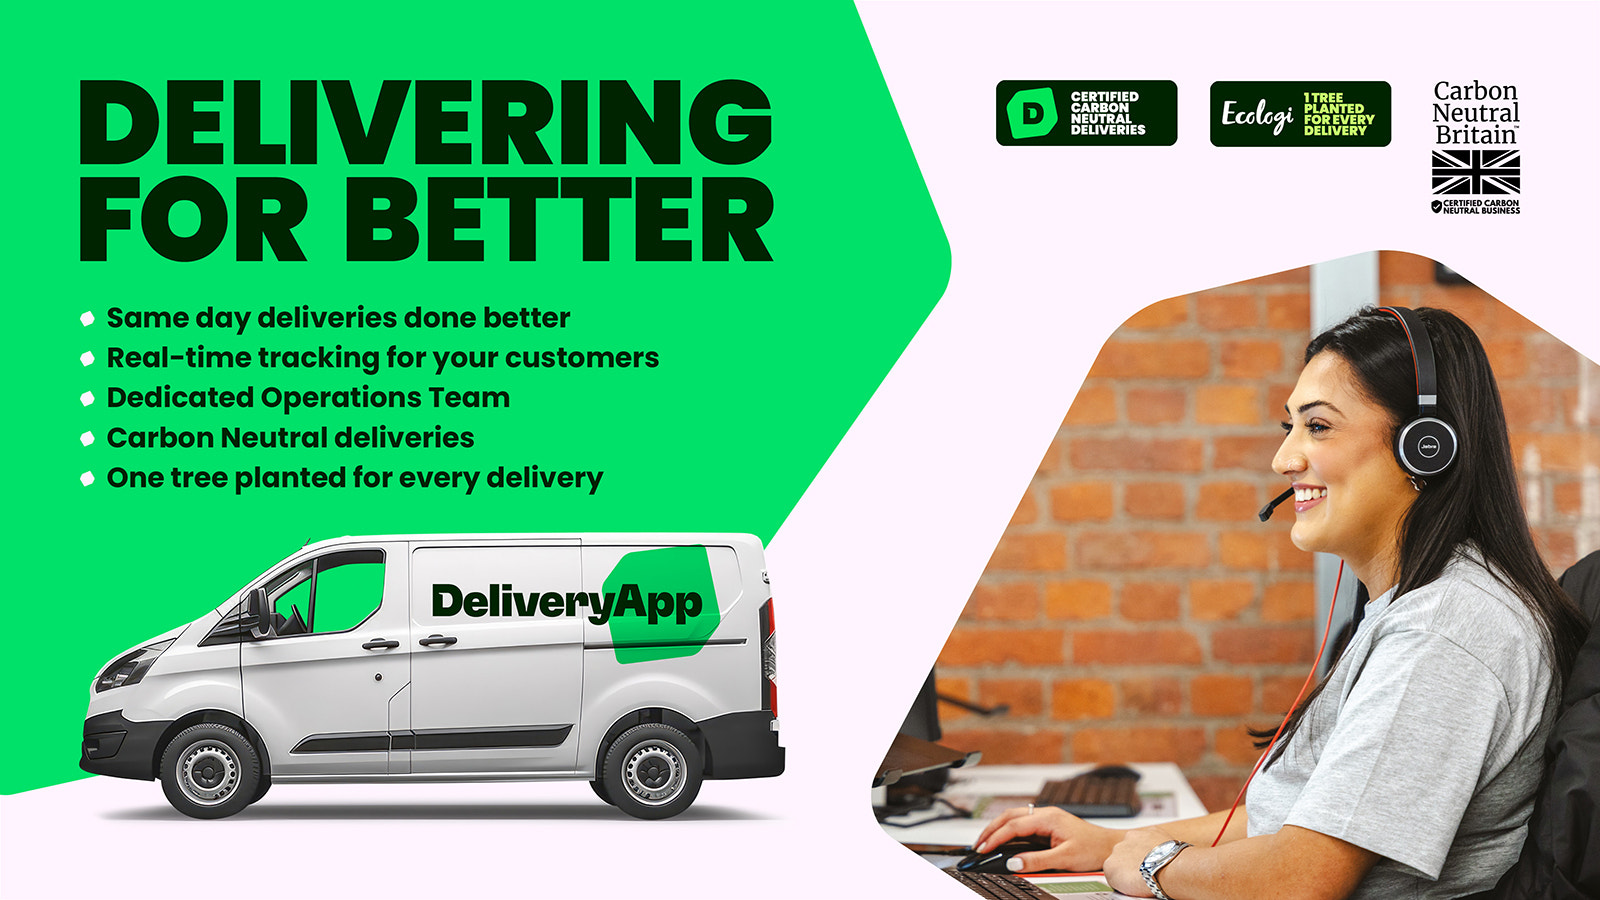 Leveringen vereenvoudigd met DeliveryApp